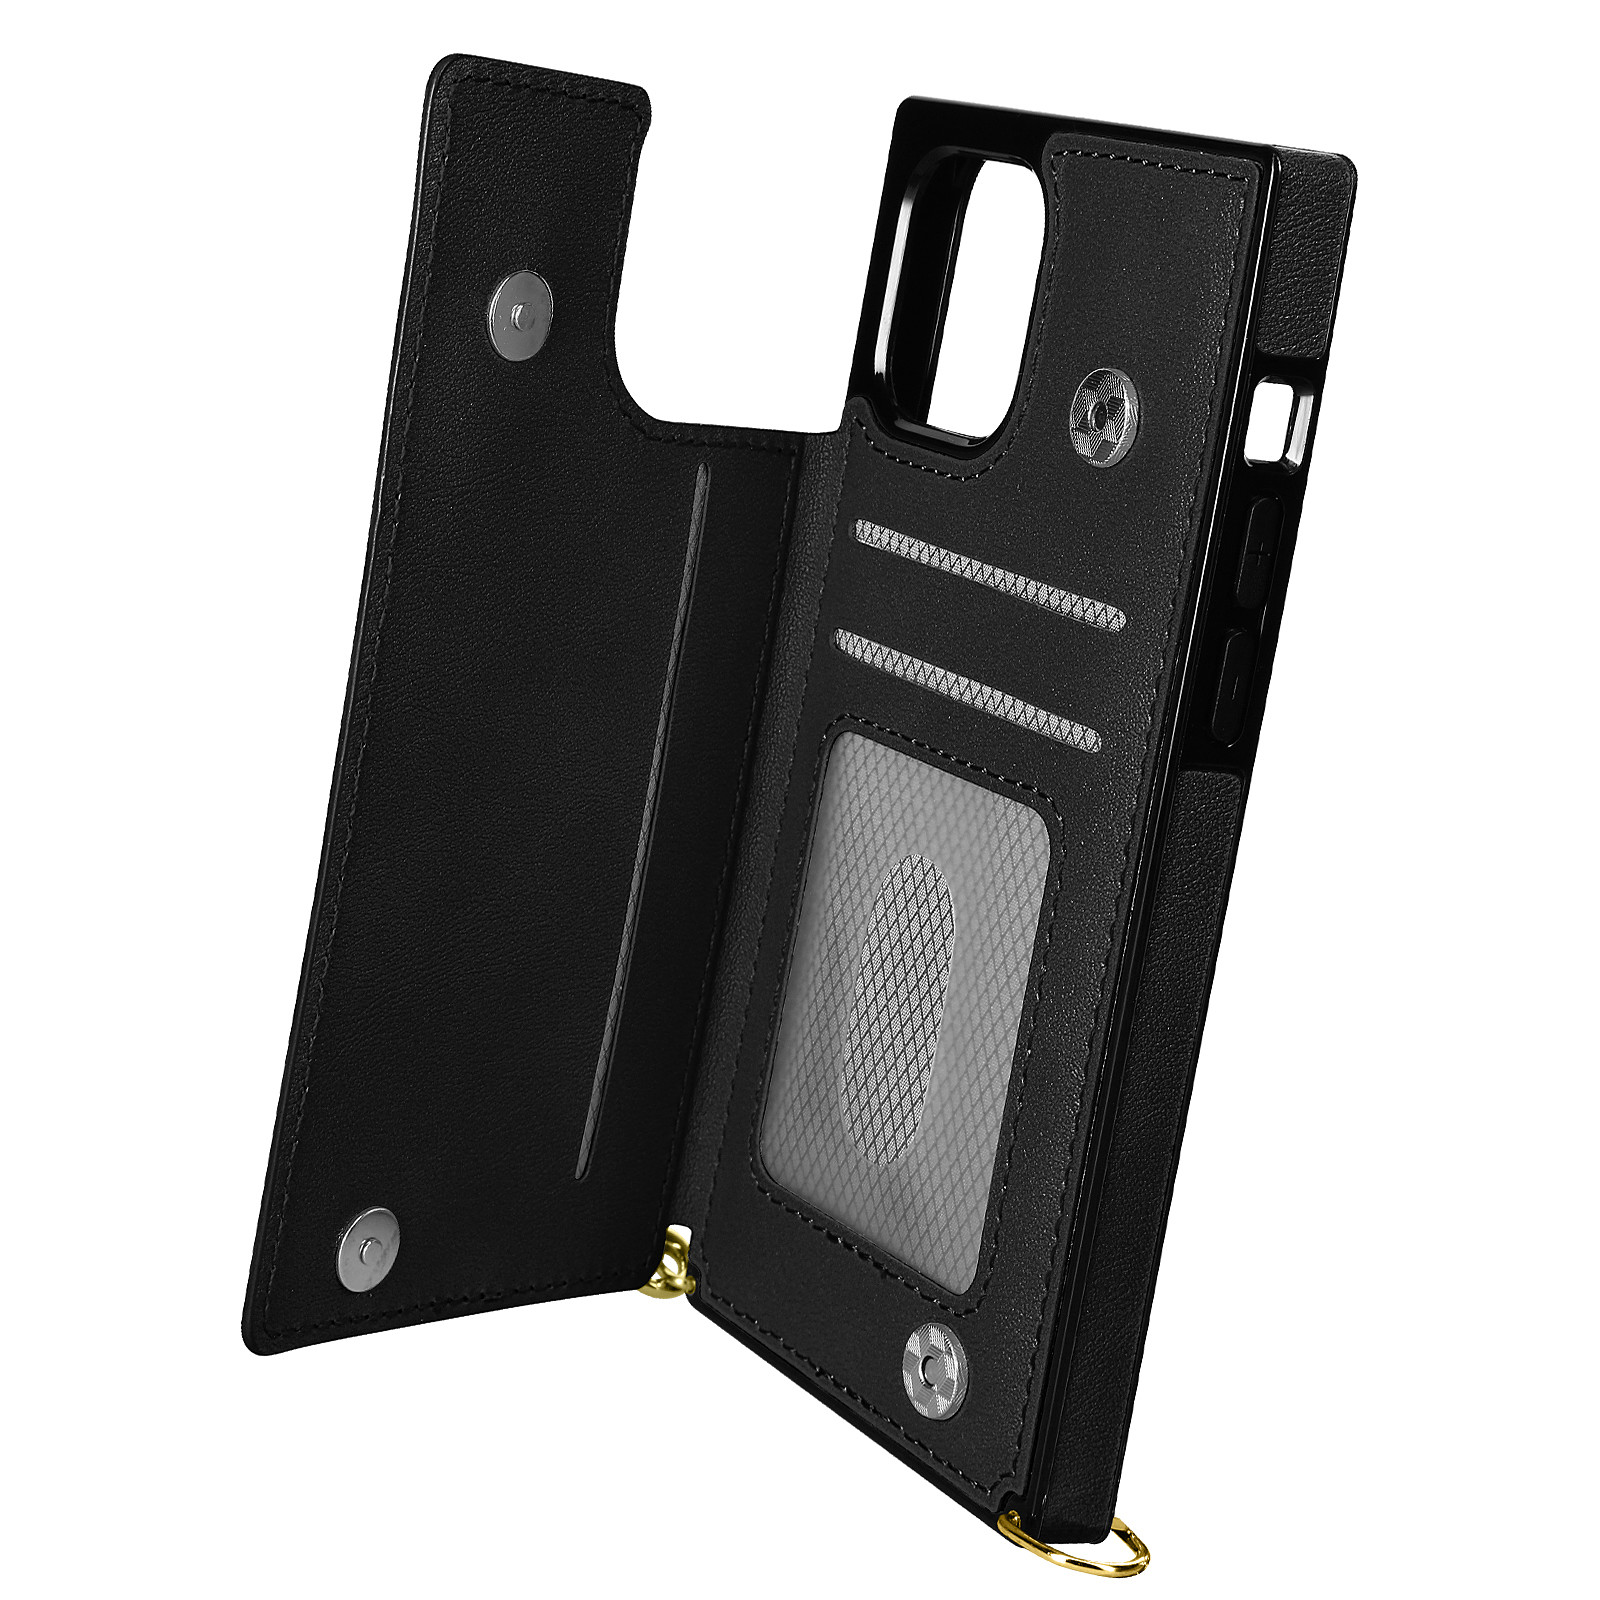 Avizar Coque Cordon pour iPhone 11 Pro Max avec Porte-cartes Support Video Lanière Noir - Coque telephone Avizar